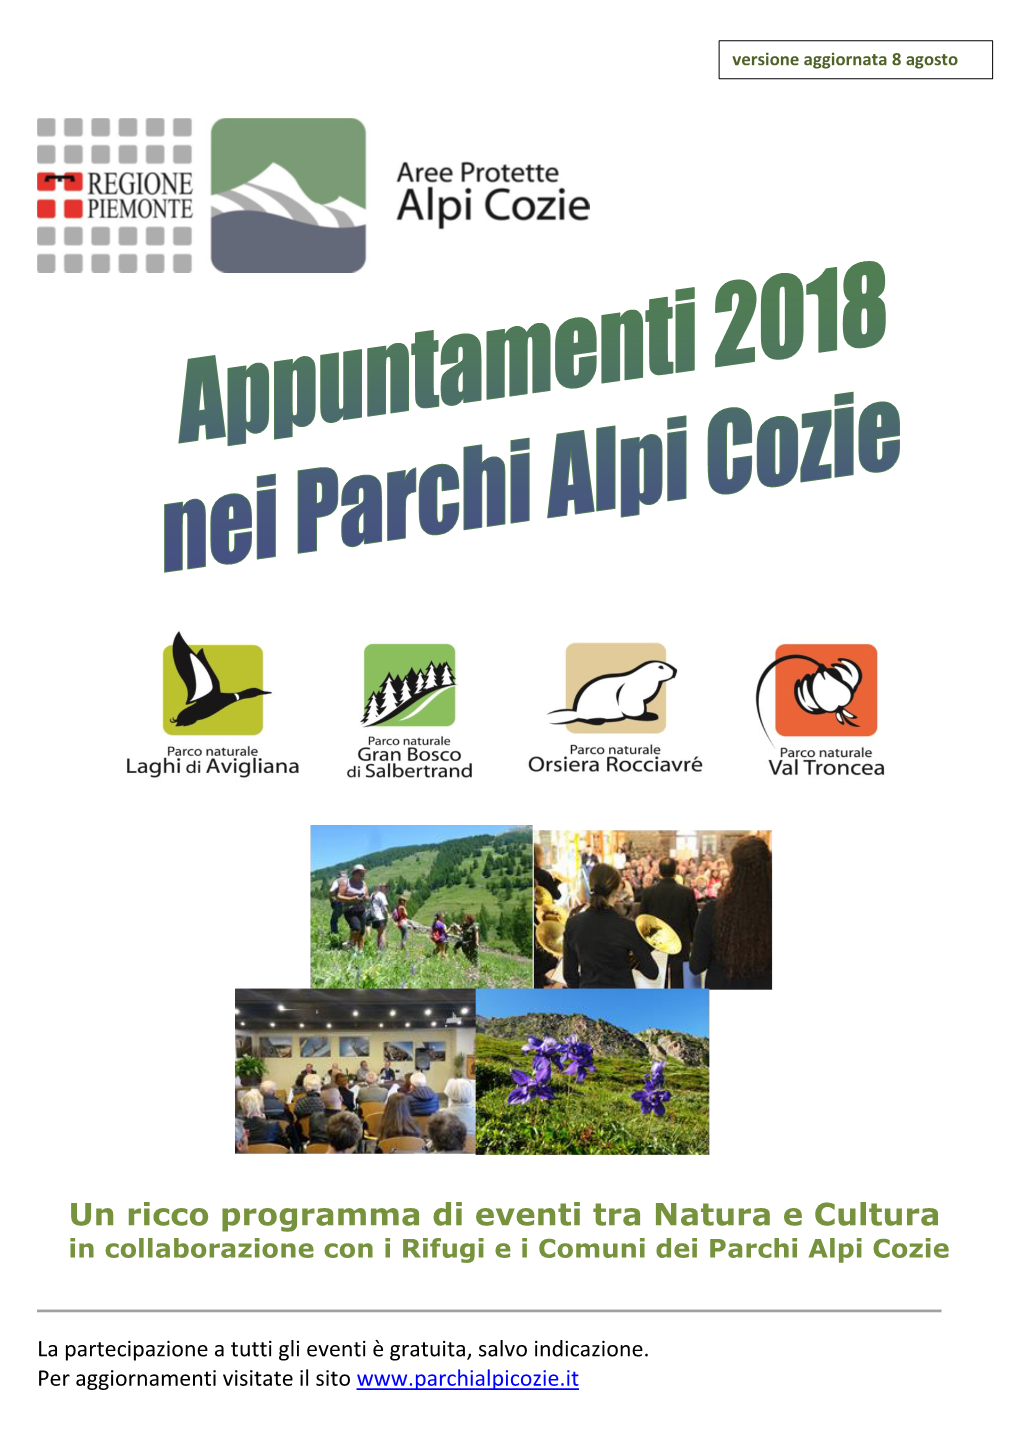 Un Ricco Programma Di Eventi Tra Natura E Cultura in Collaborazione Con I Rifugi E I Comuni Dei Parchi Alpi Cozie